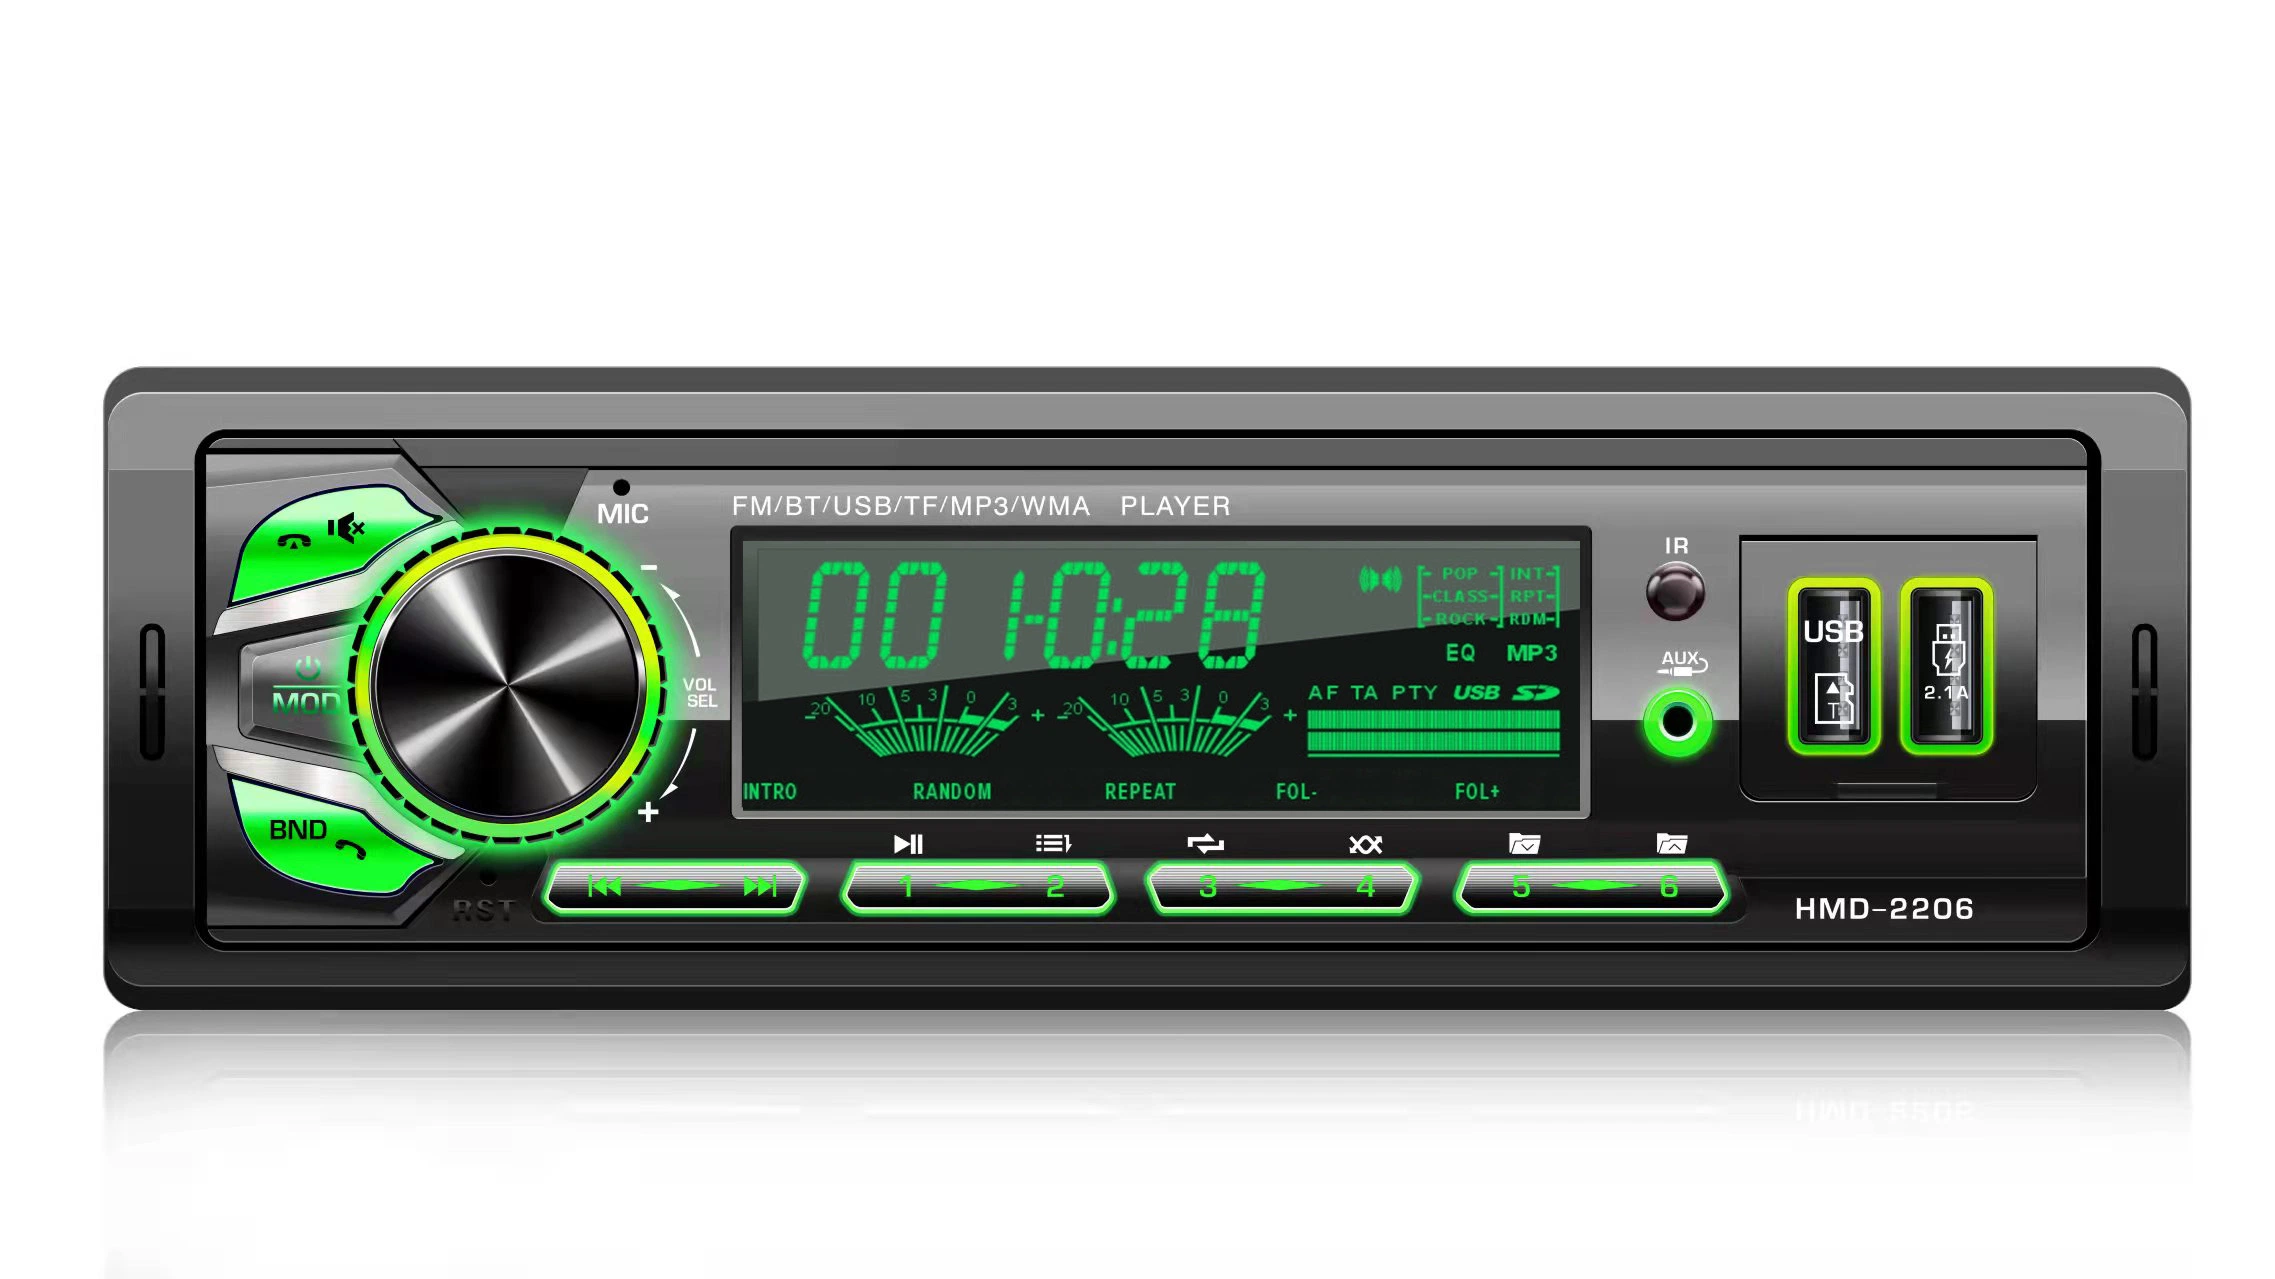 Panel fijo coche reproductor de audio MP3 USB SD Auxiliar de Audio de coche entrada de la radio FM